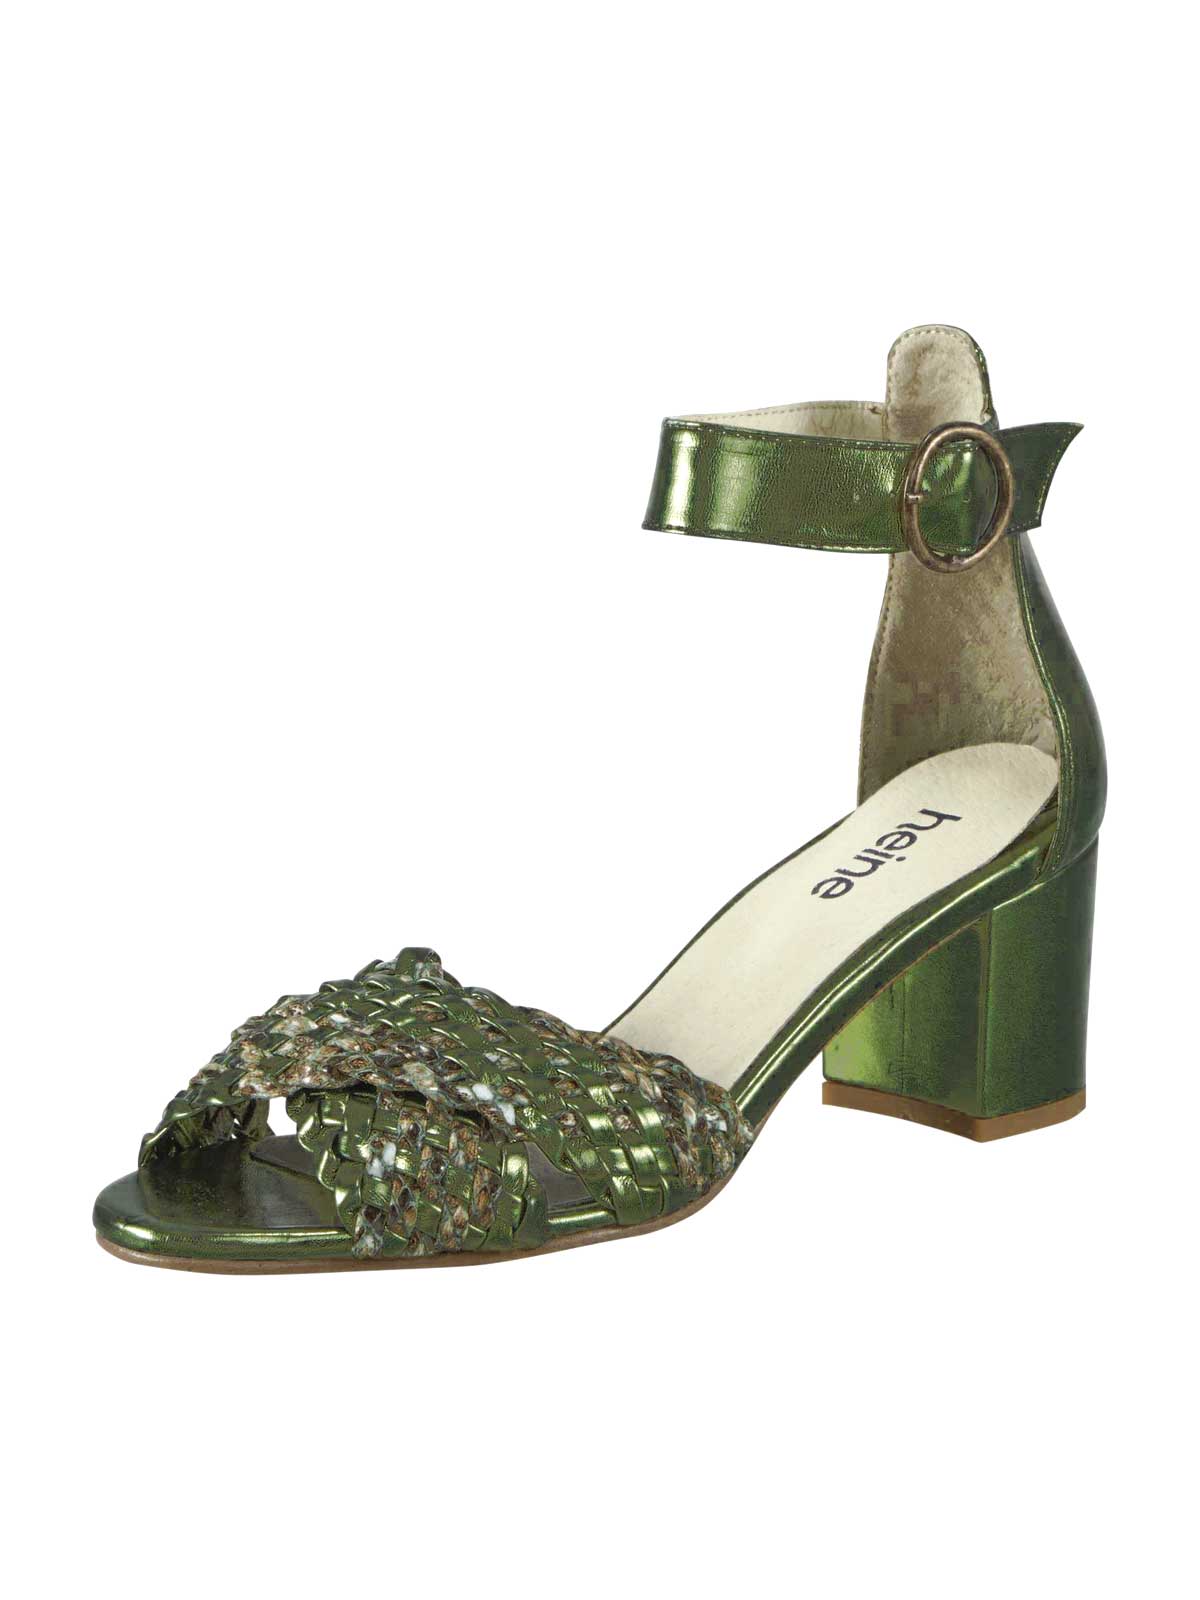 HEINE Damen Sandalette, grün-metallic